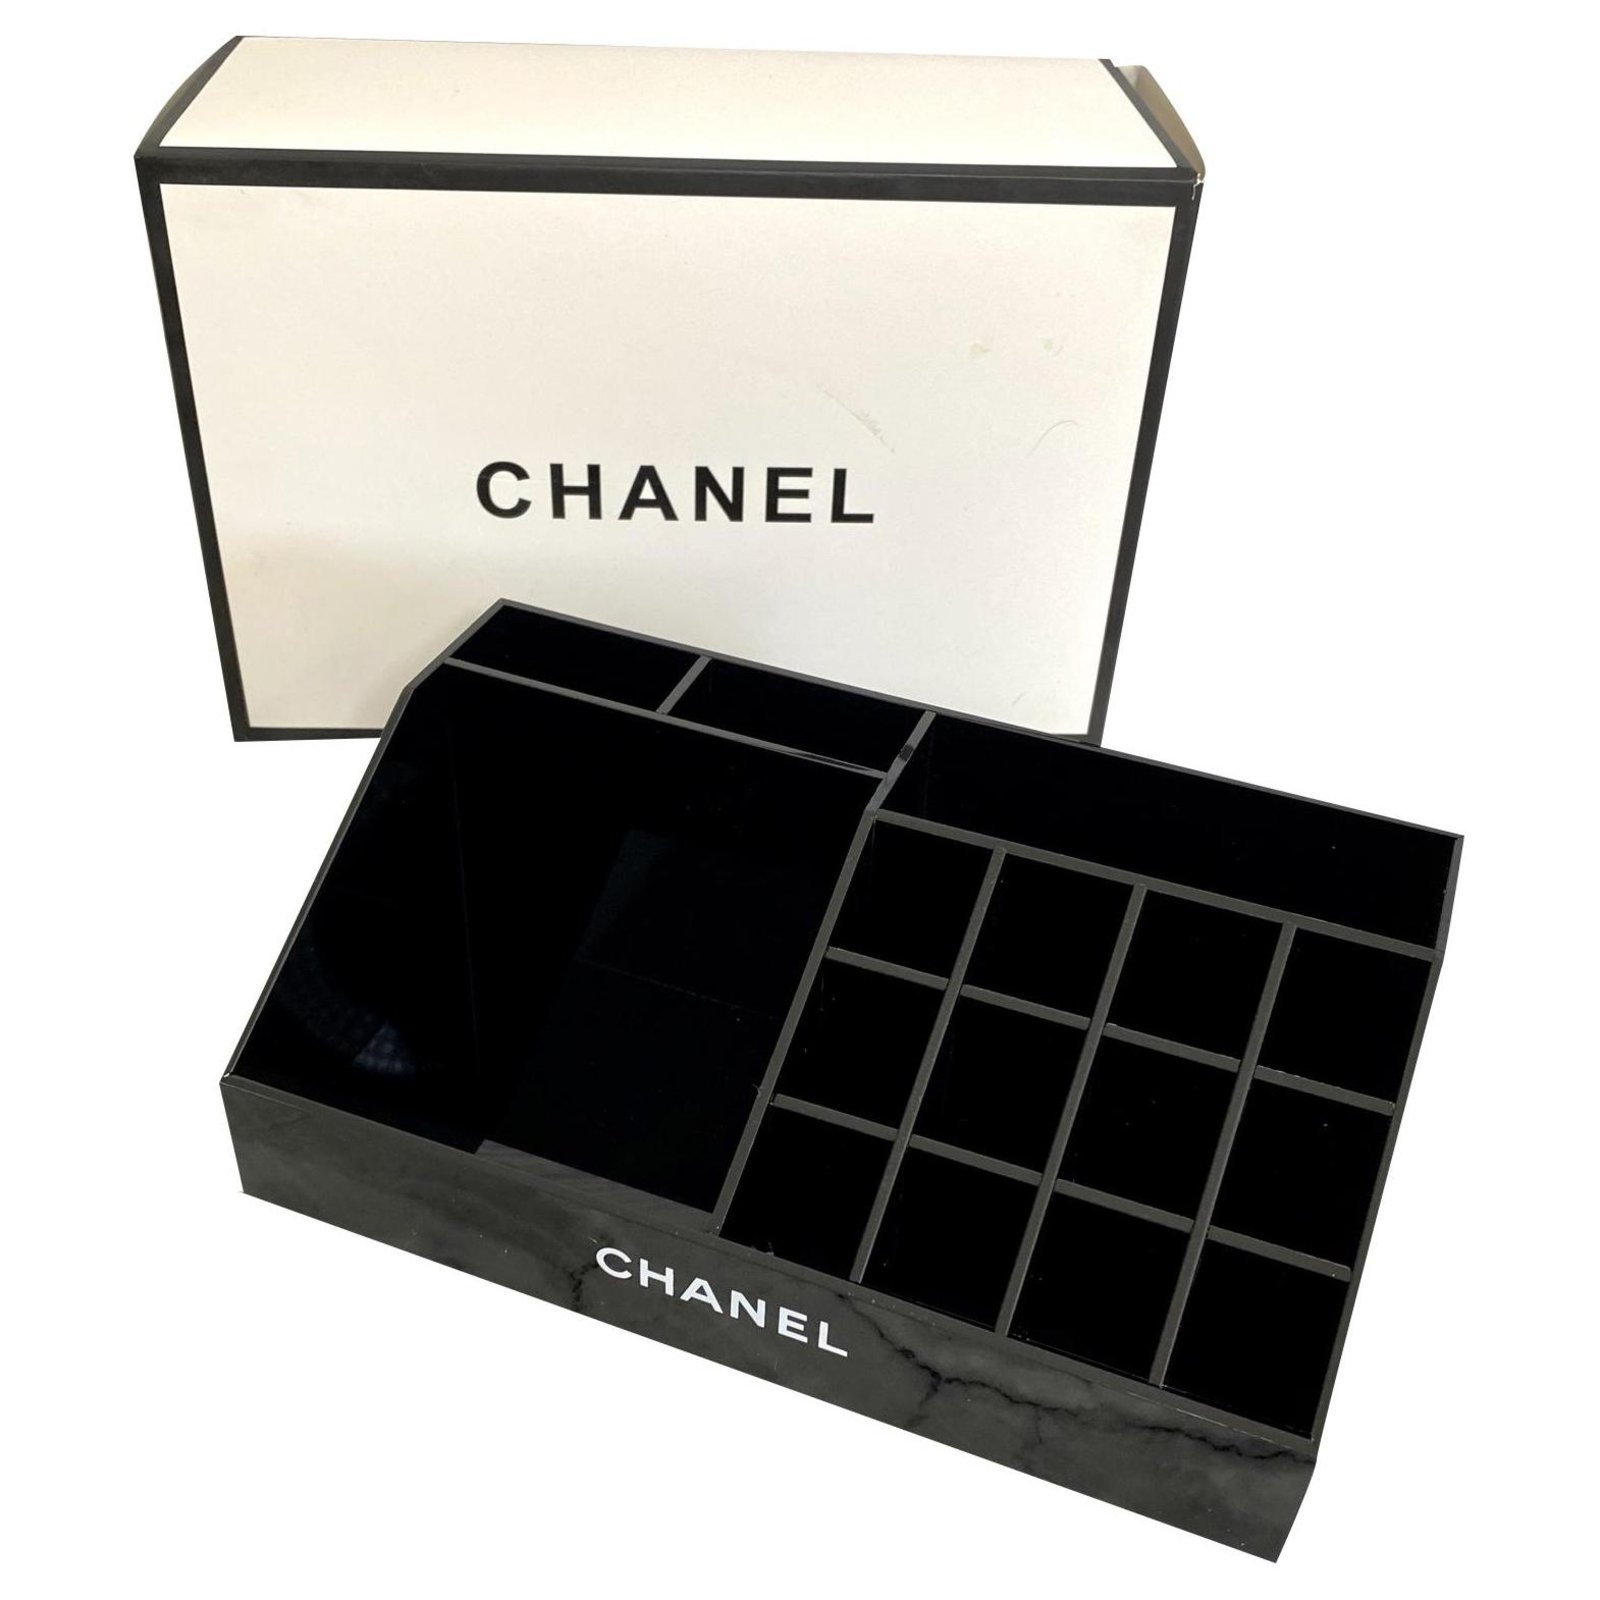 Chanel Makeup Display